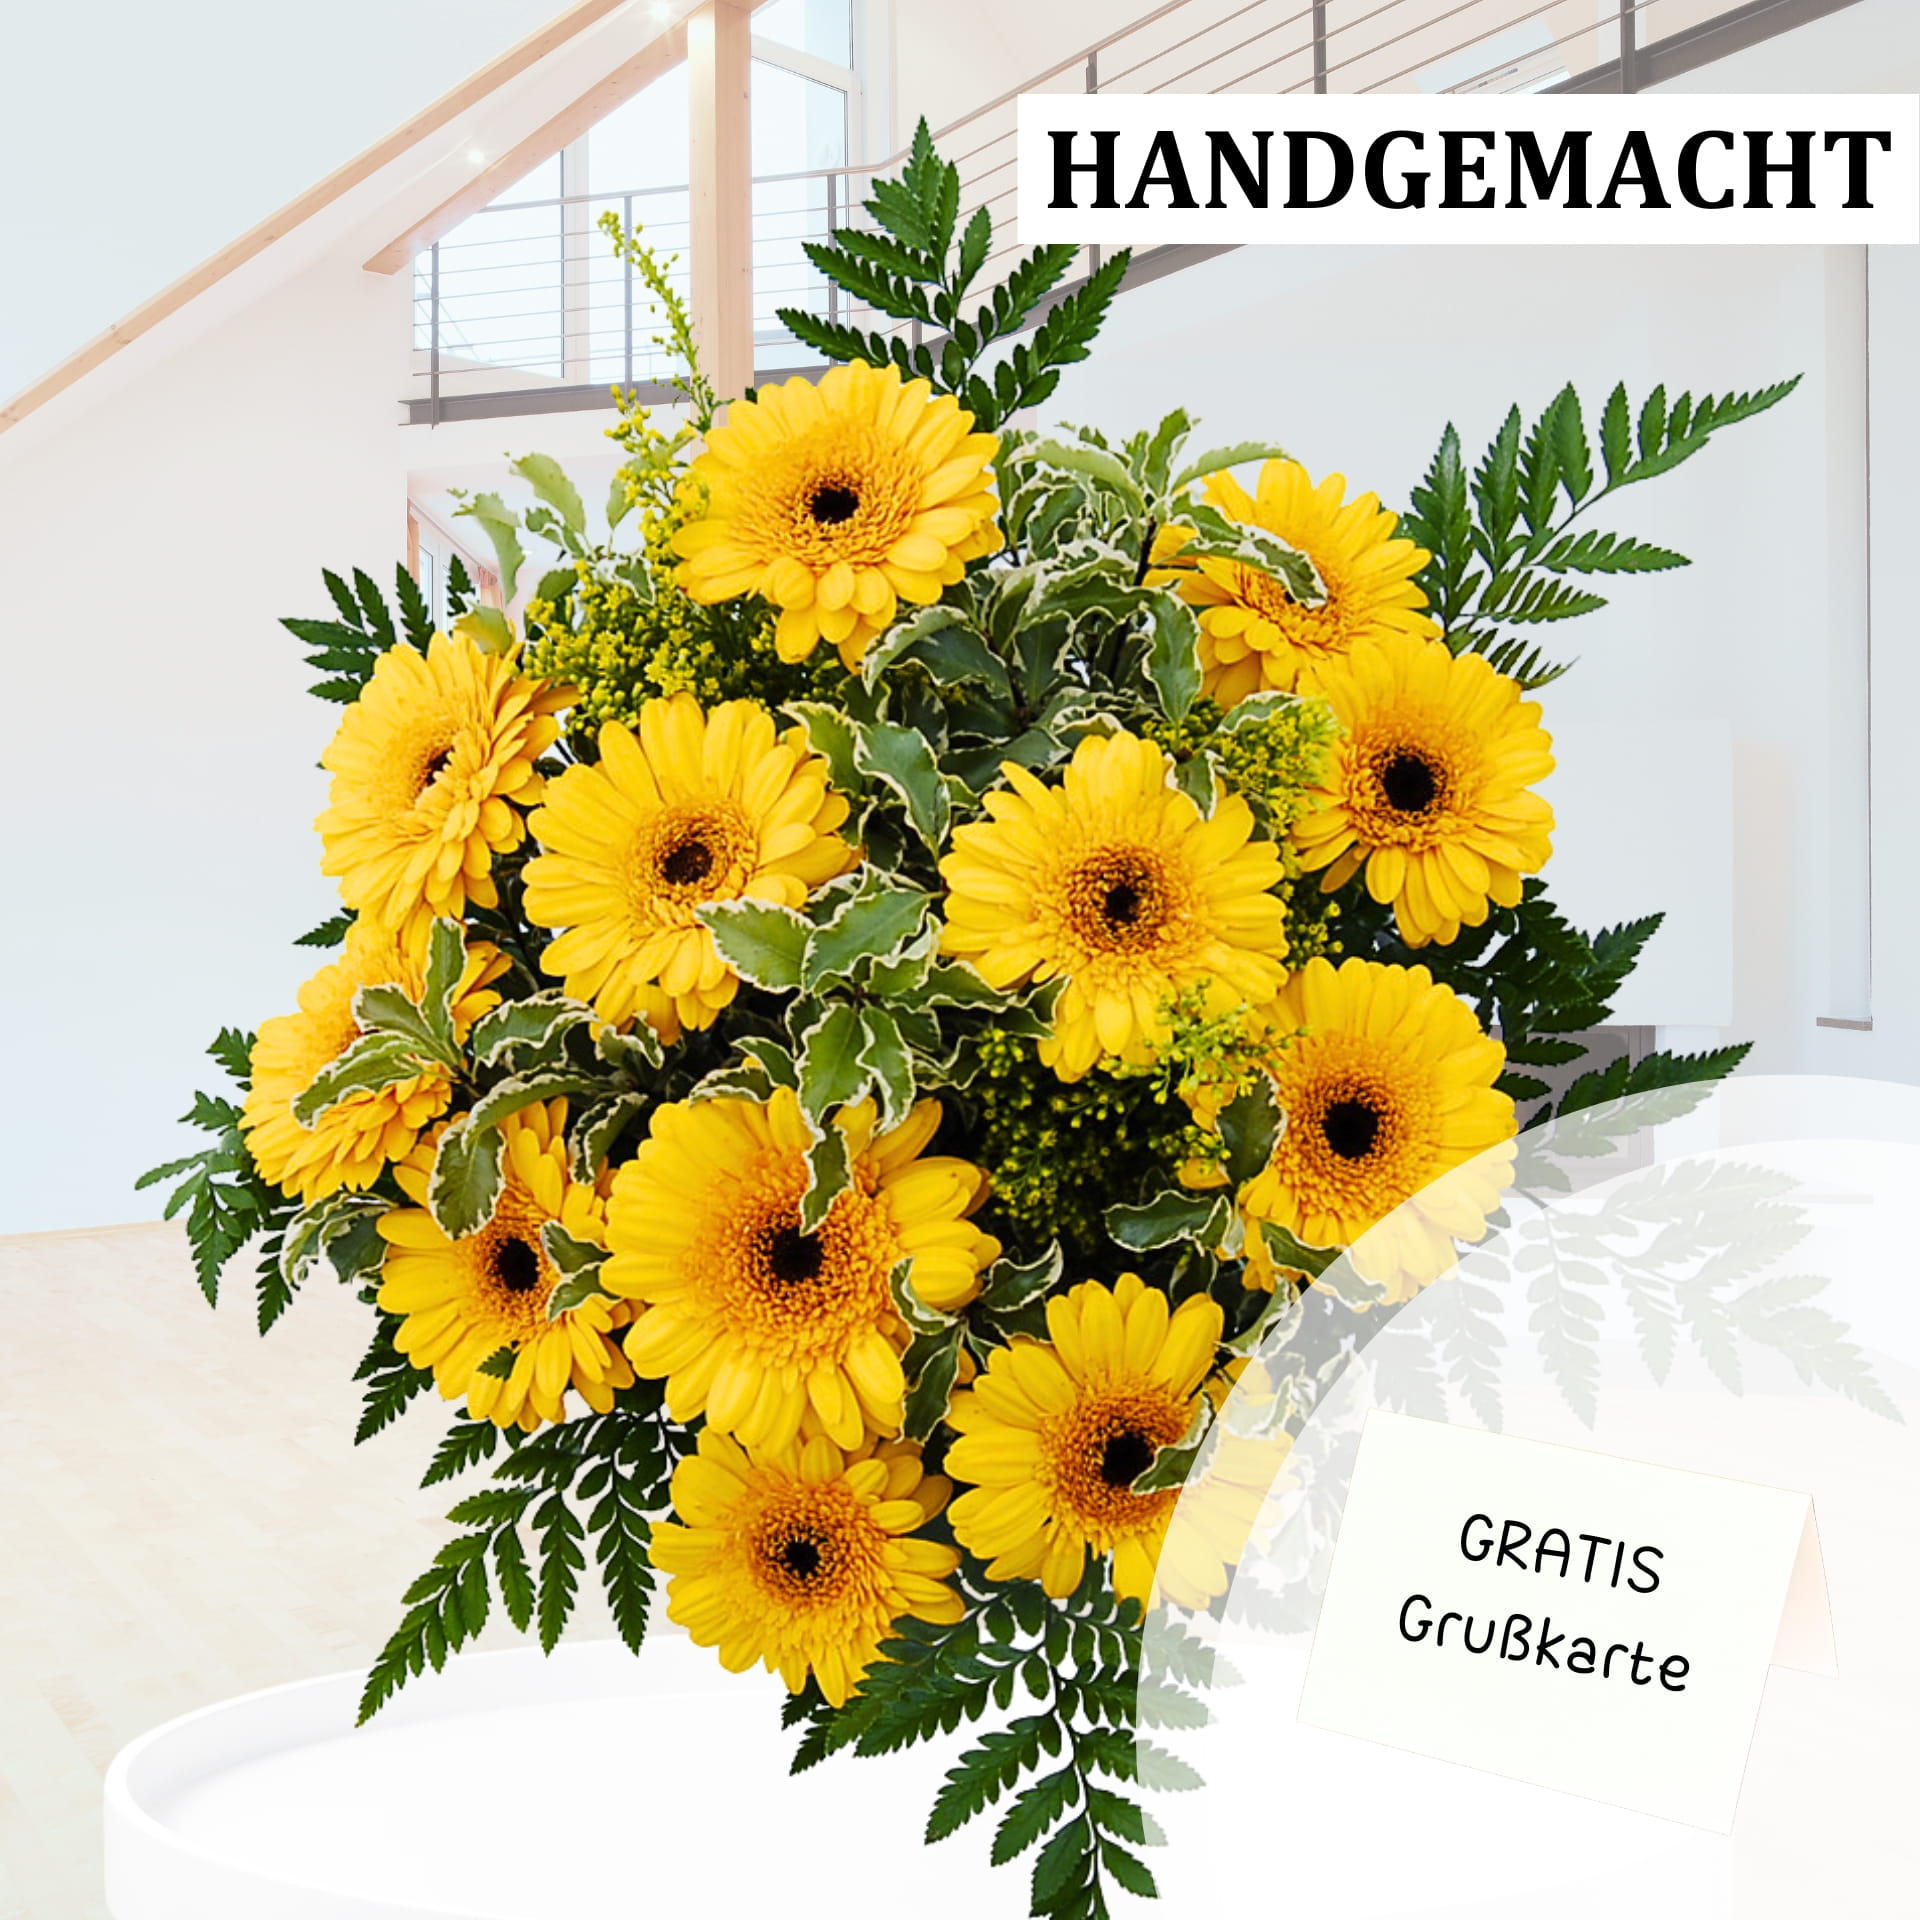  Handgemachter Blumenstrauß aus gelben Gerbera und grünen Blättern in einem modernen Innenraum. Text auf dem Bild: "HANDGEMACHT" und "GRATIS Grußkarte".